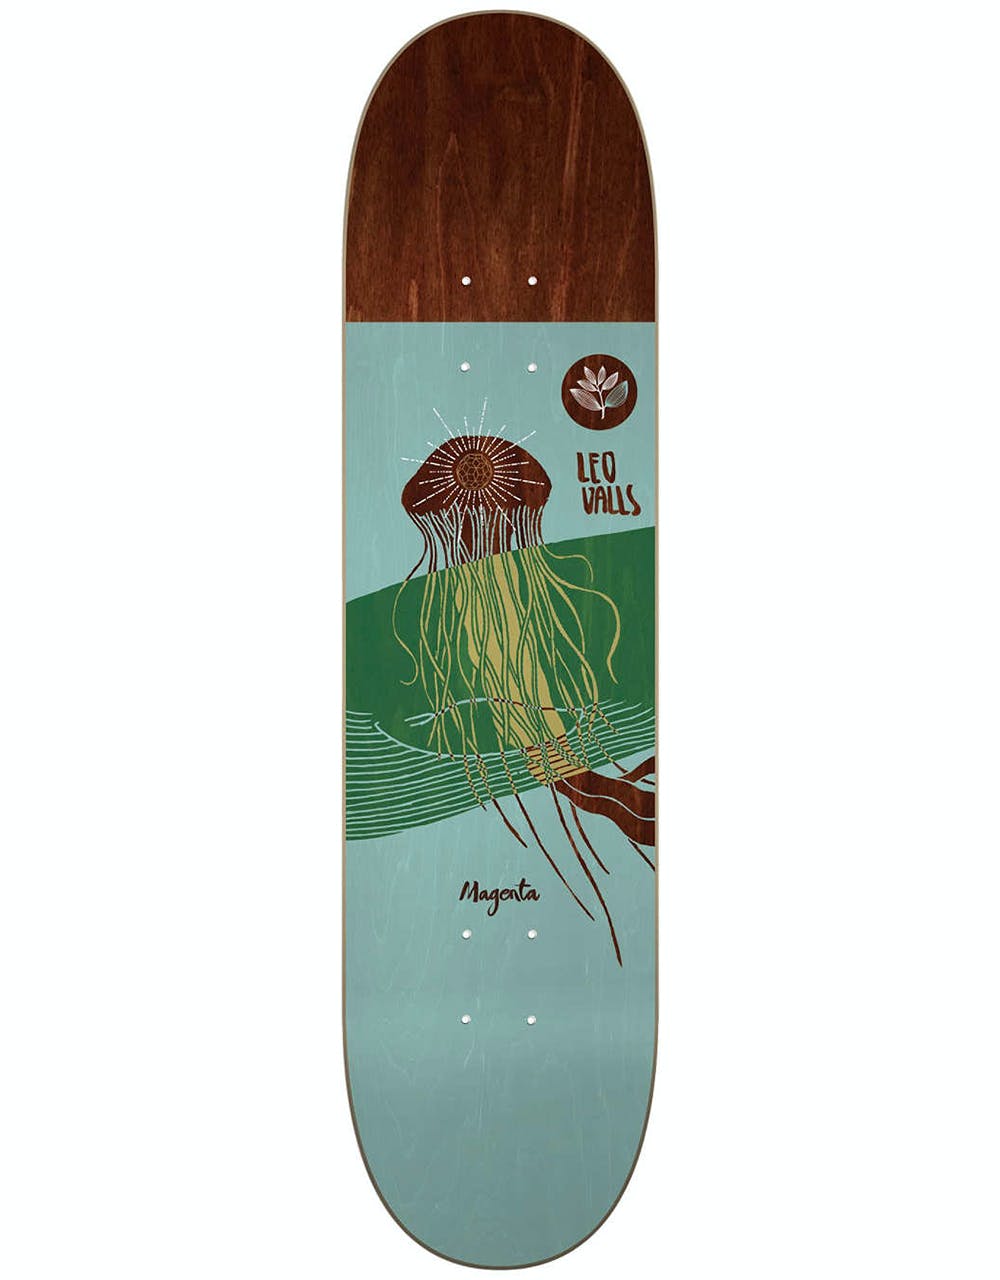 Magenta Valls Ocean Series Skateboard Deck - 7.875"